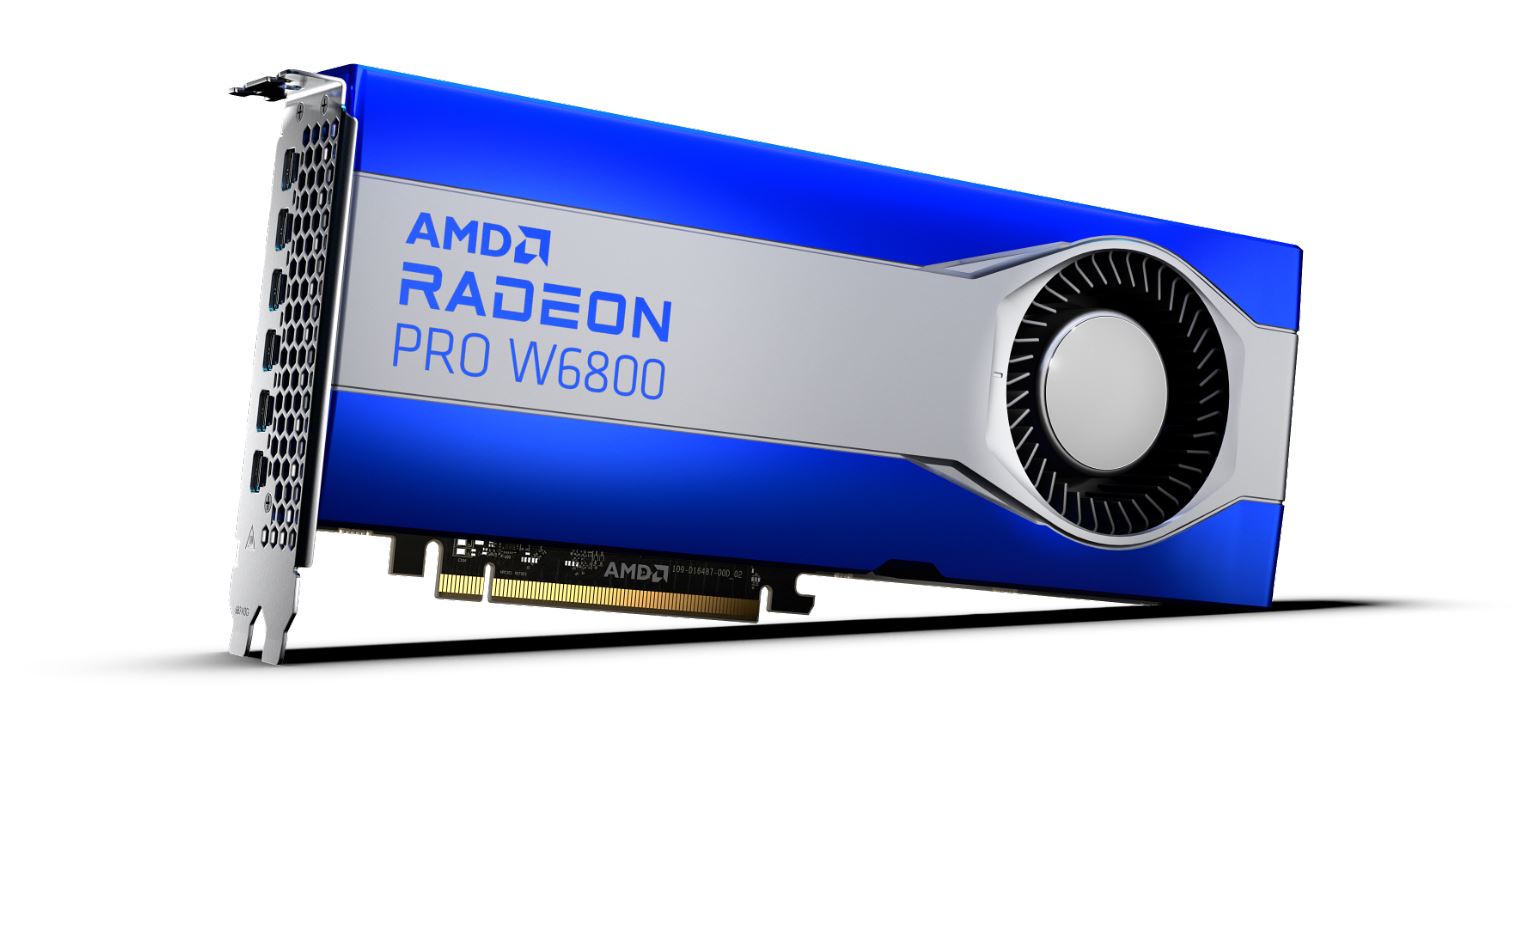 AMD nâng cấp cho dòng card đồ họa chuyên nghiệp